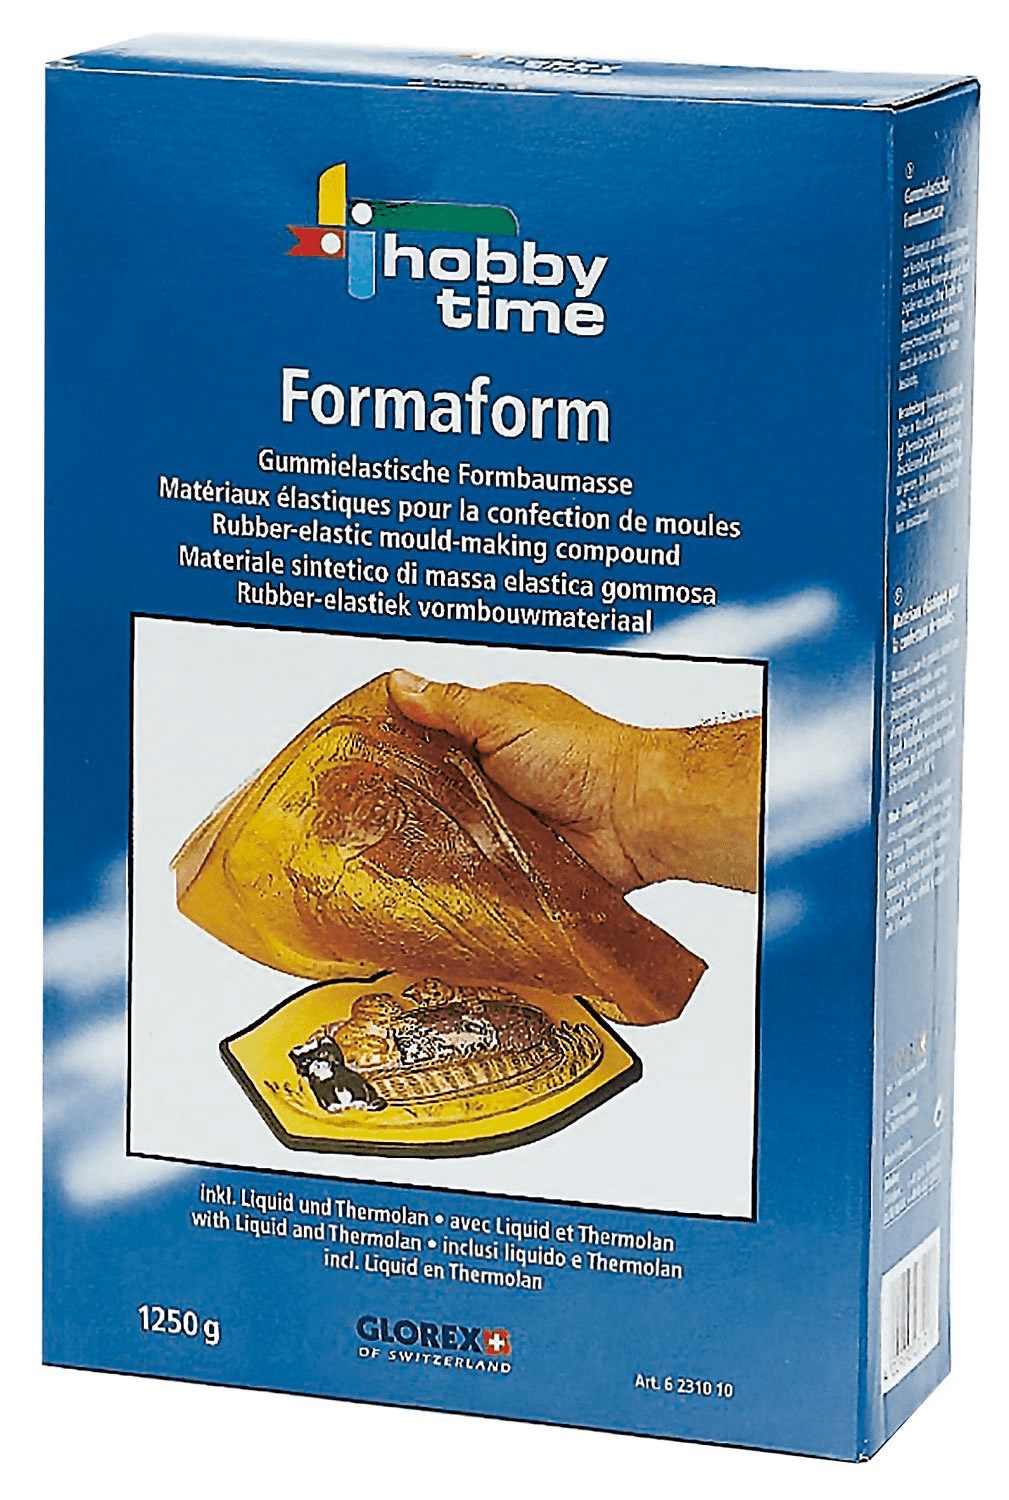 Formaform, 1250 g, Formenbaumasse gummielastisch